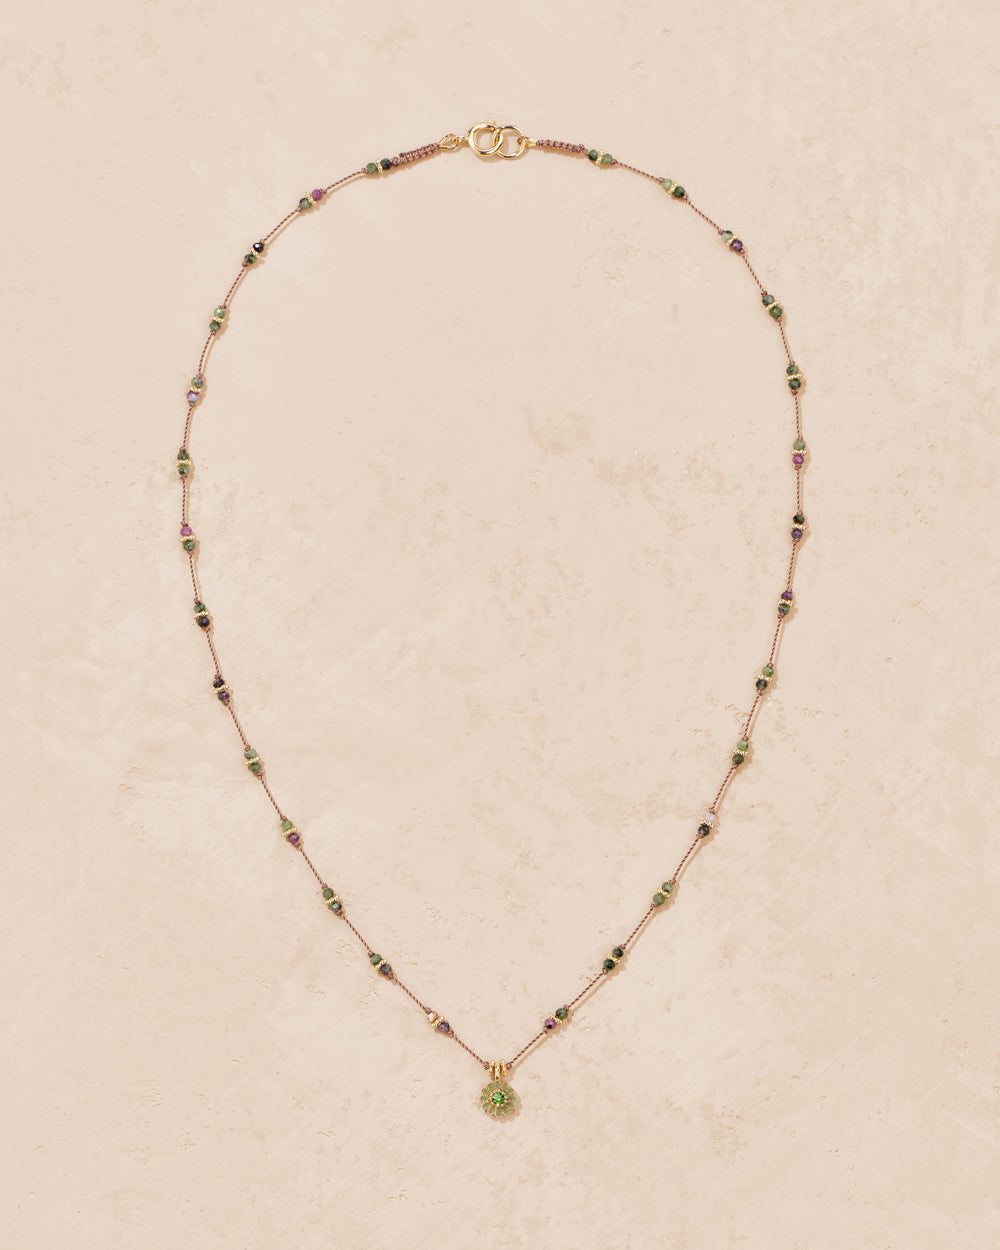 Malä-Saï zoïsites necklace